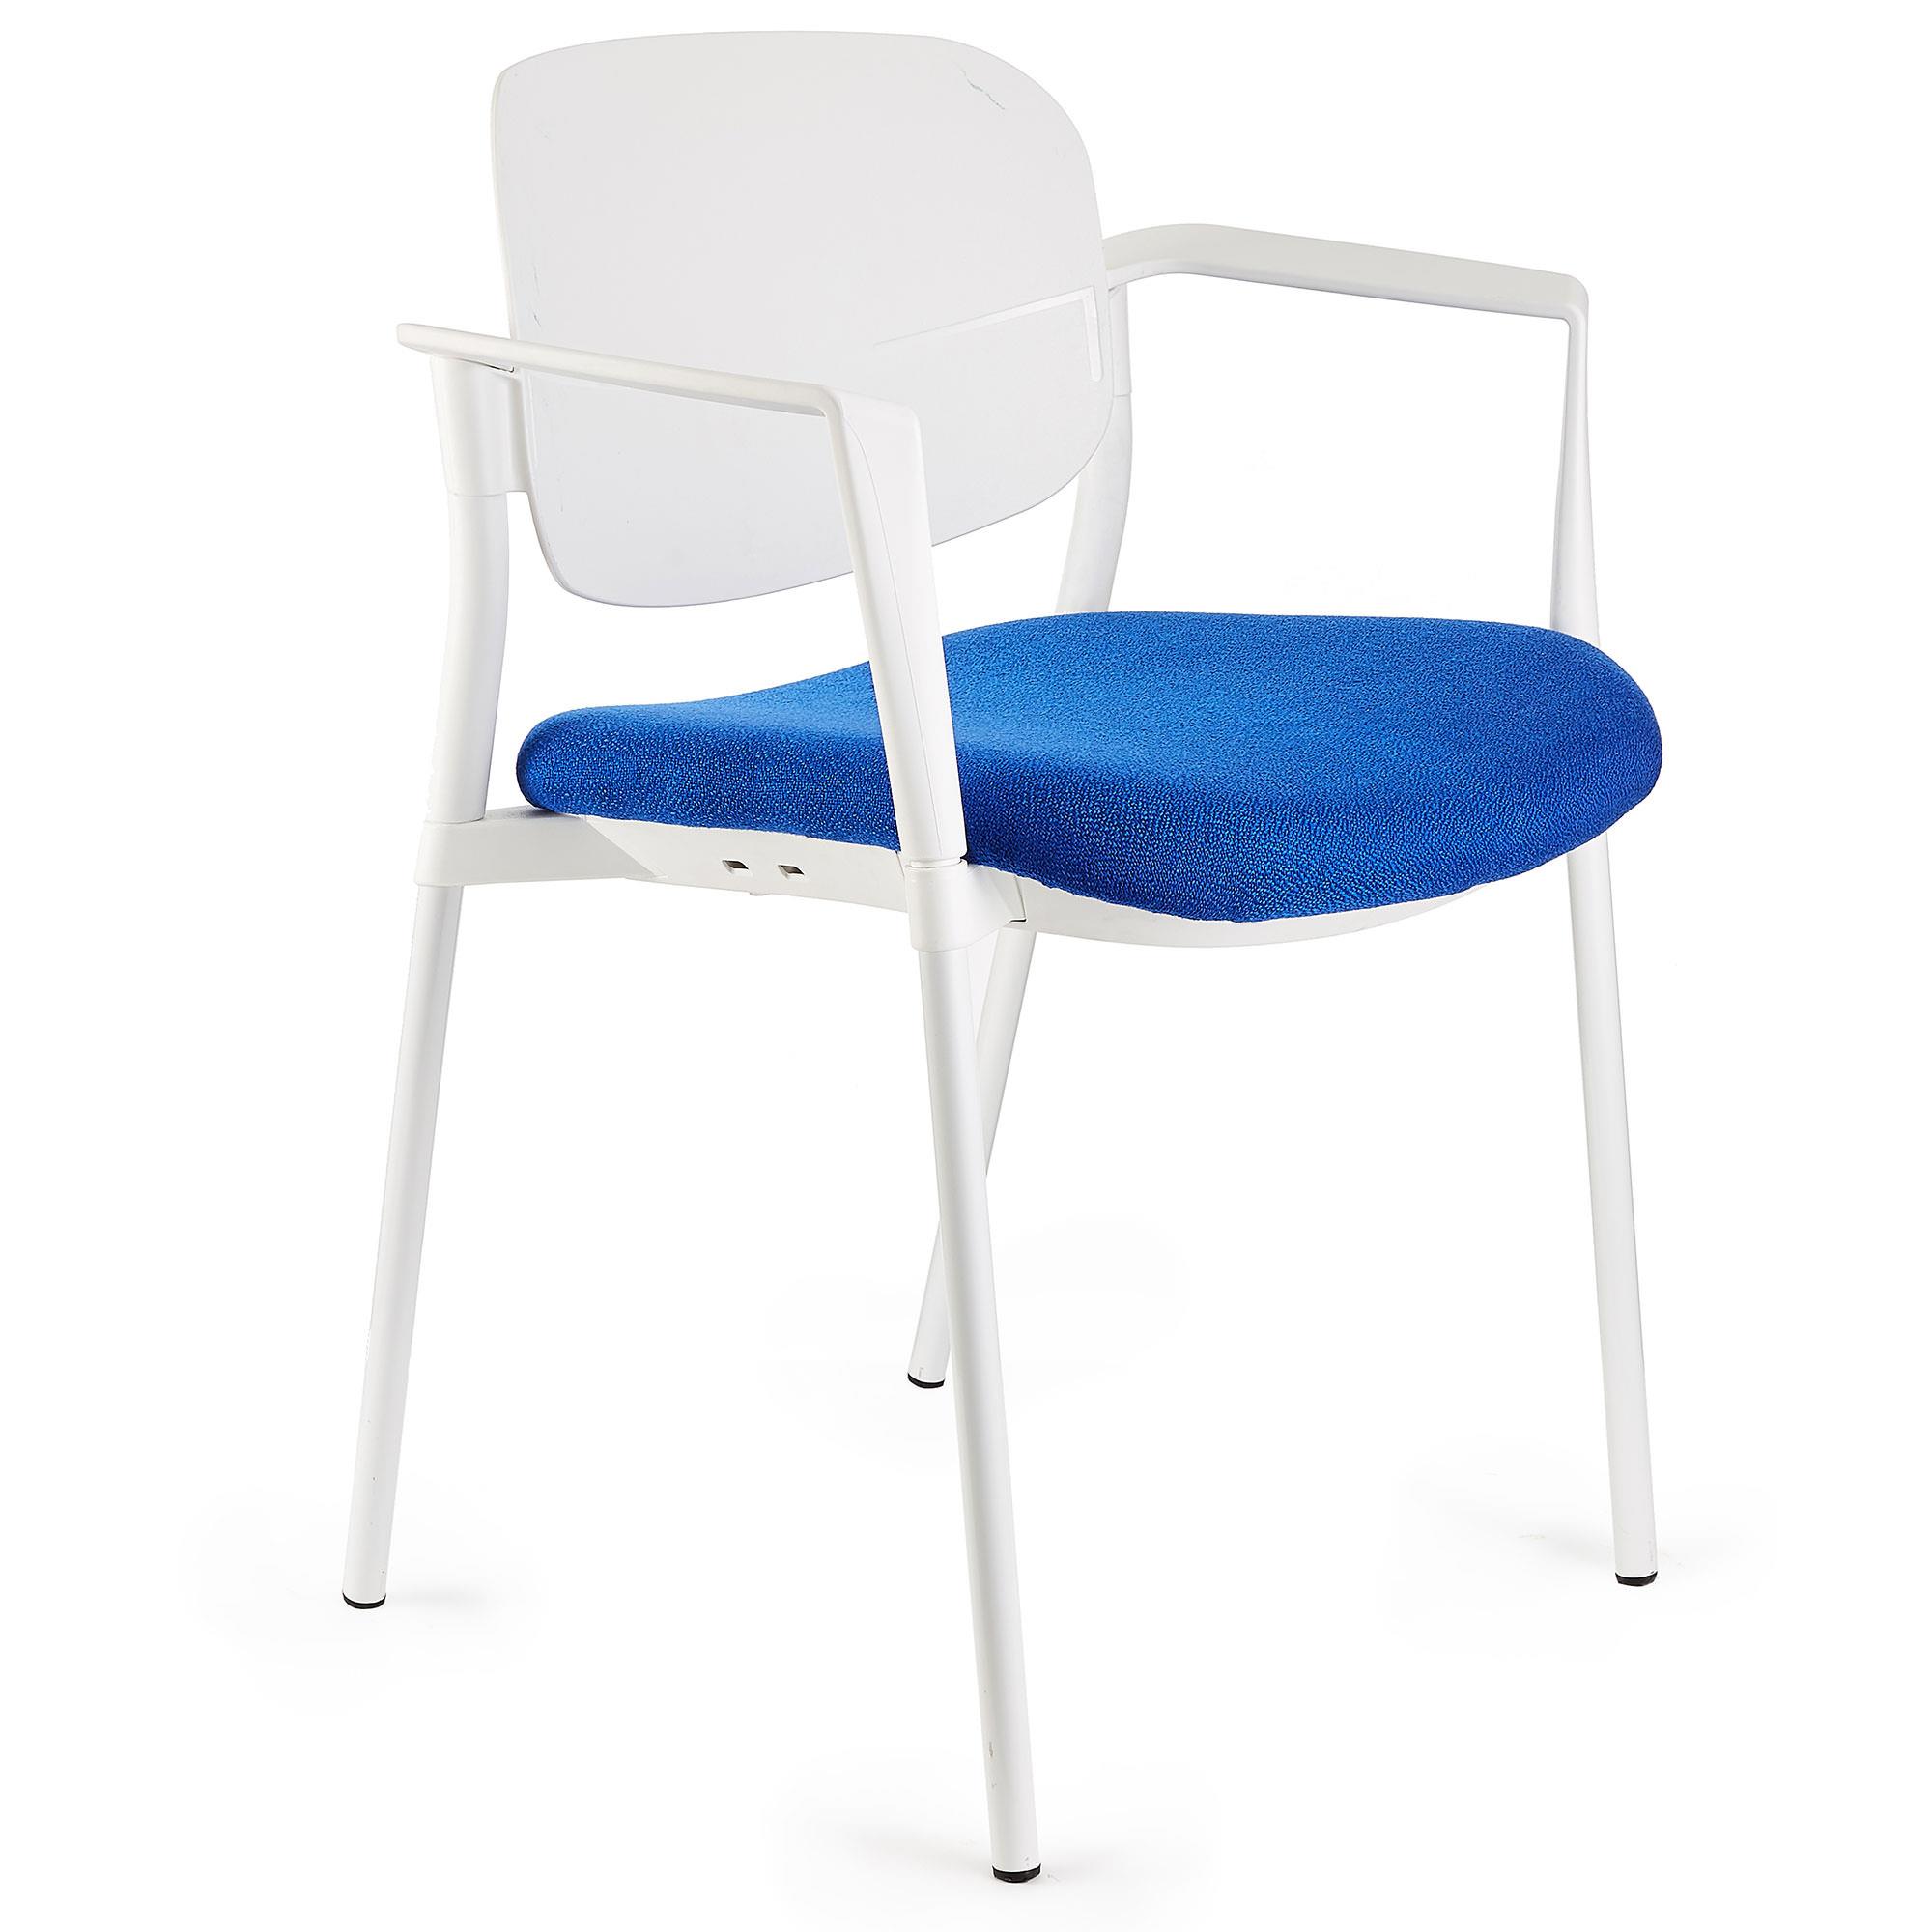 Cadeira de Visita ERIC COM BRAÇOS, Confortável e Empilhável, Cor Azul